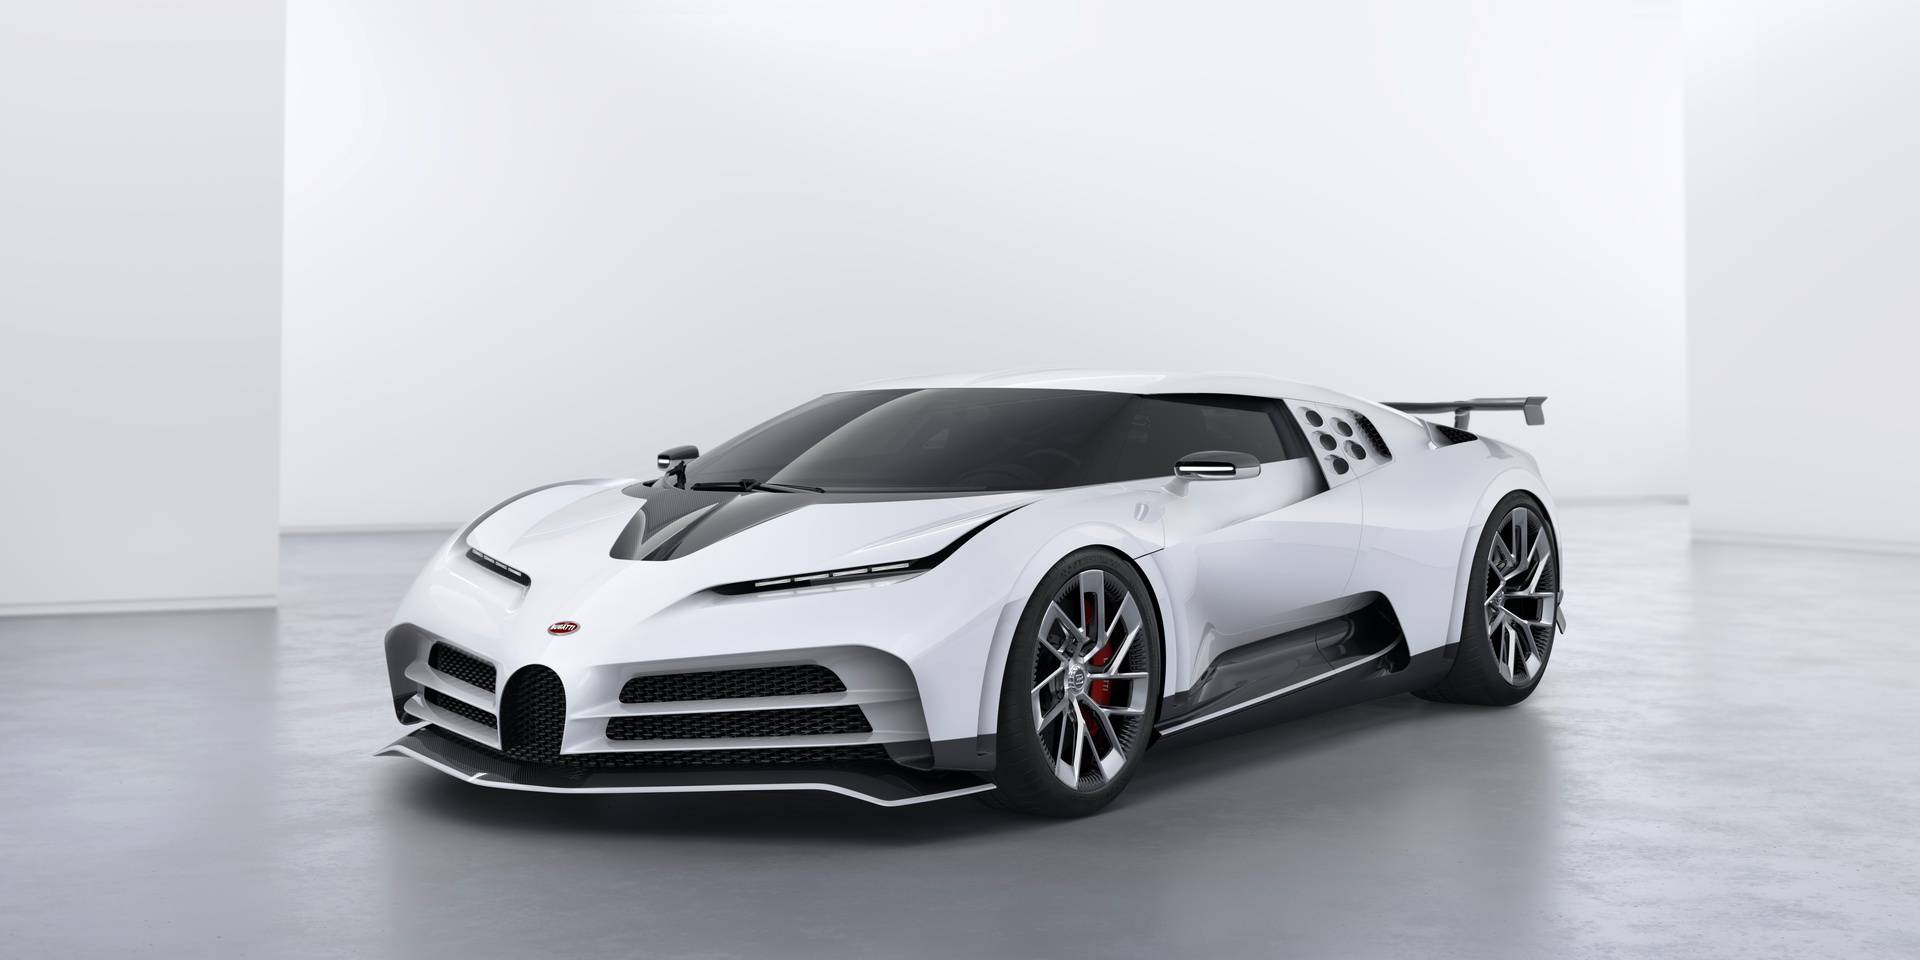 Povijest Bugattija prepuna je padova, zašto VW želi prodati, a Rimac kupiti slavnu tvrtku?